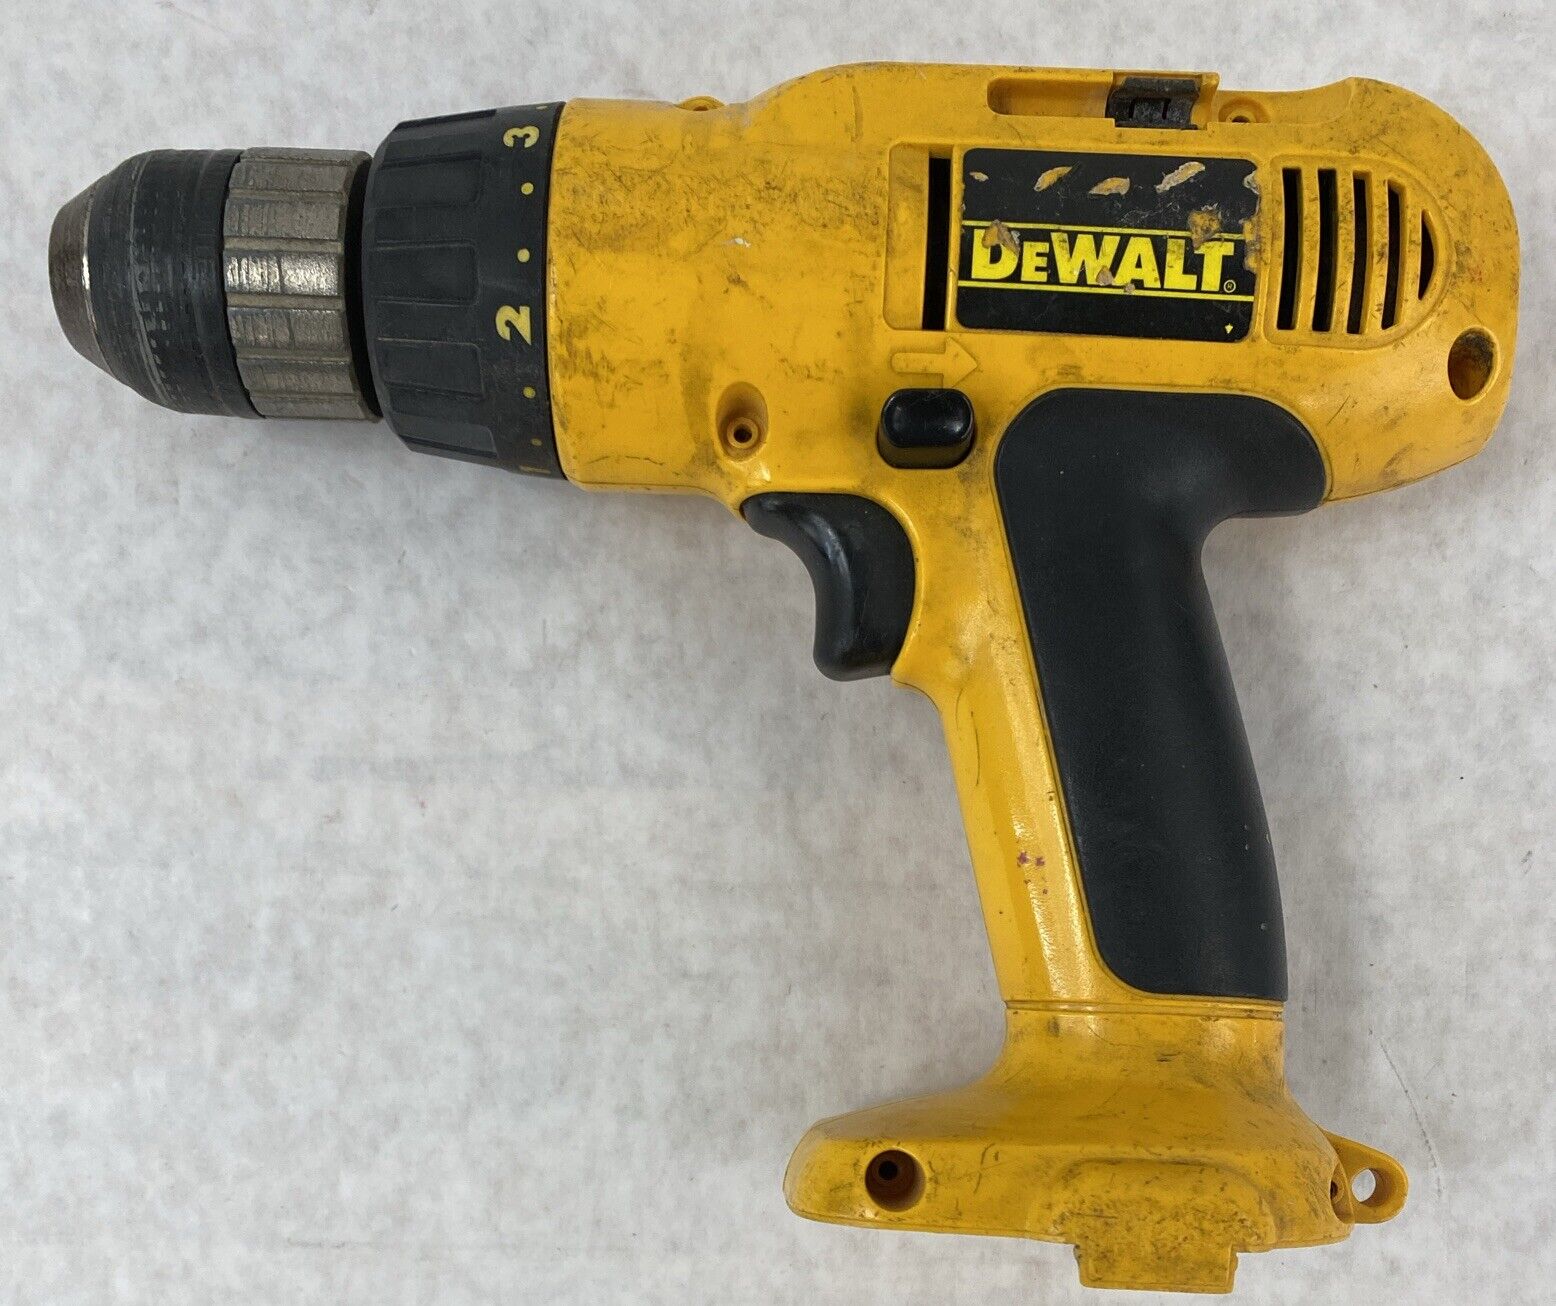 DeWalt DW972 12v 3/8" Cordless Drill NO ACCESSORIES